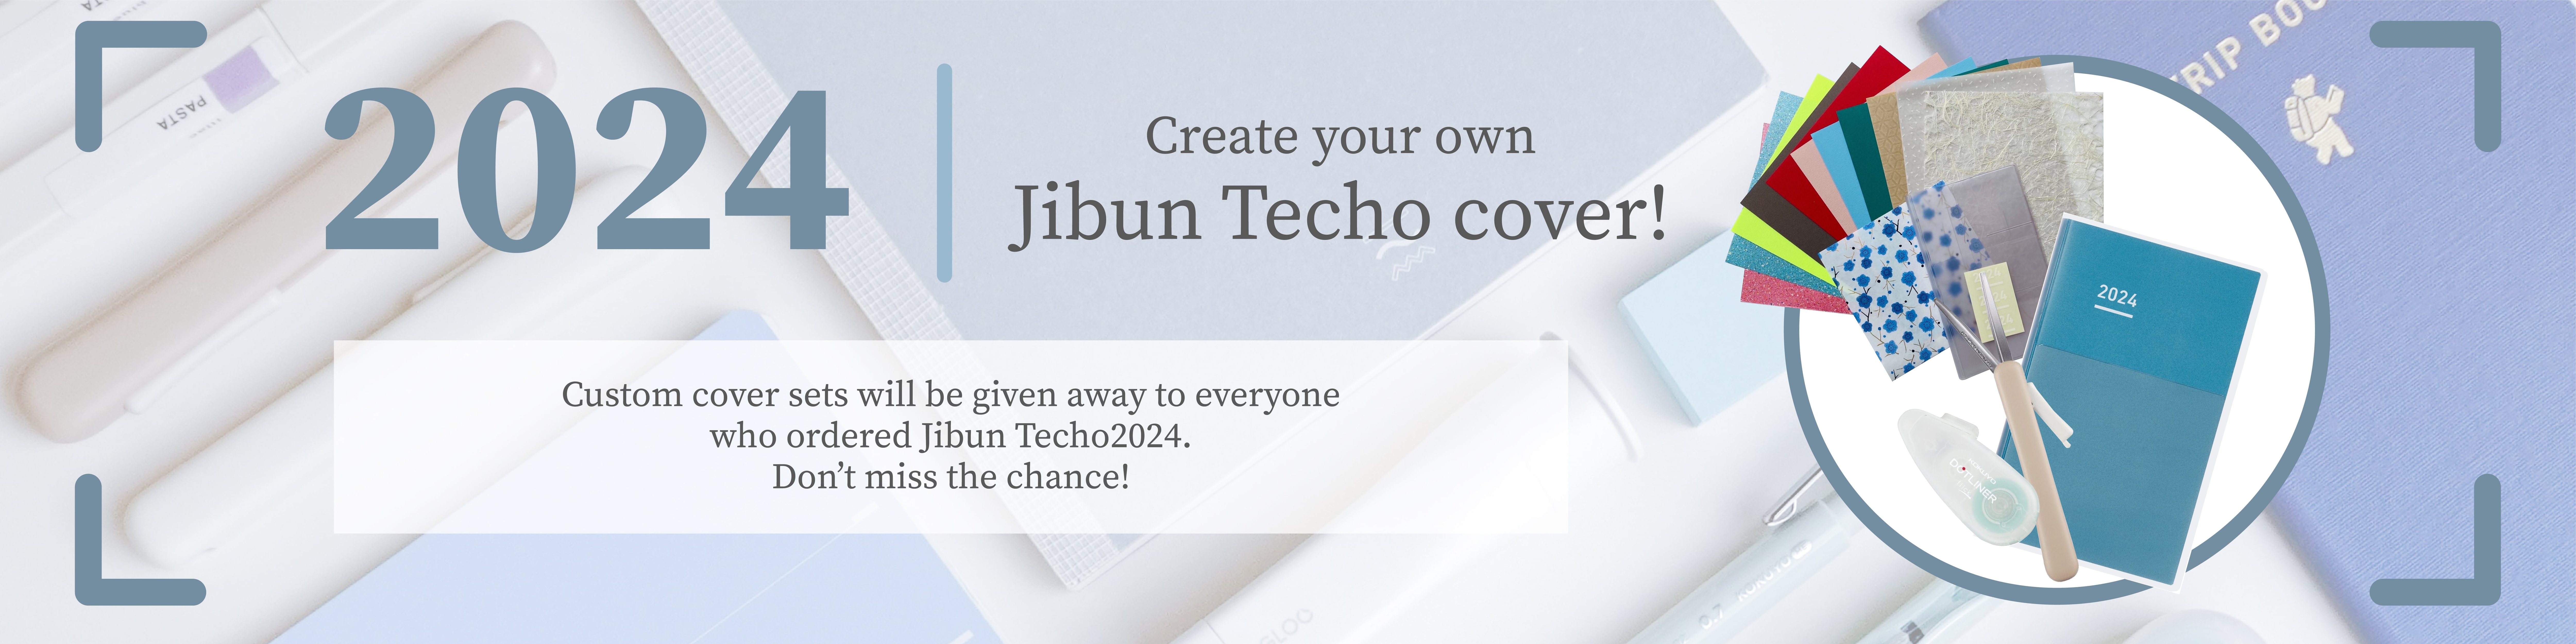 Jibun Techo Lite banner